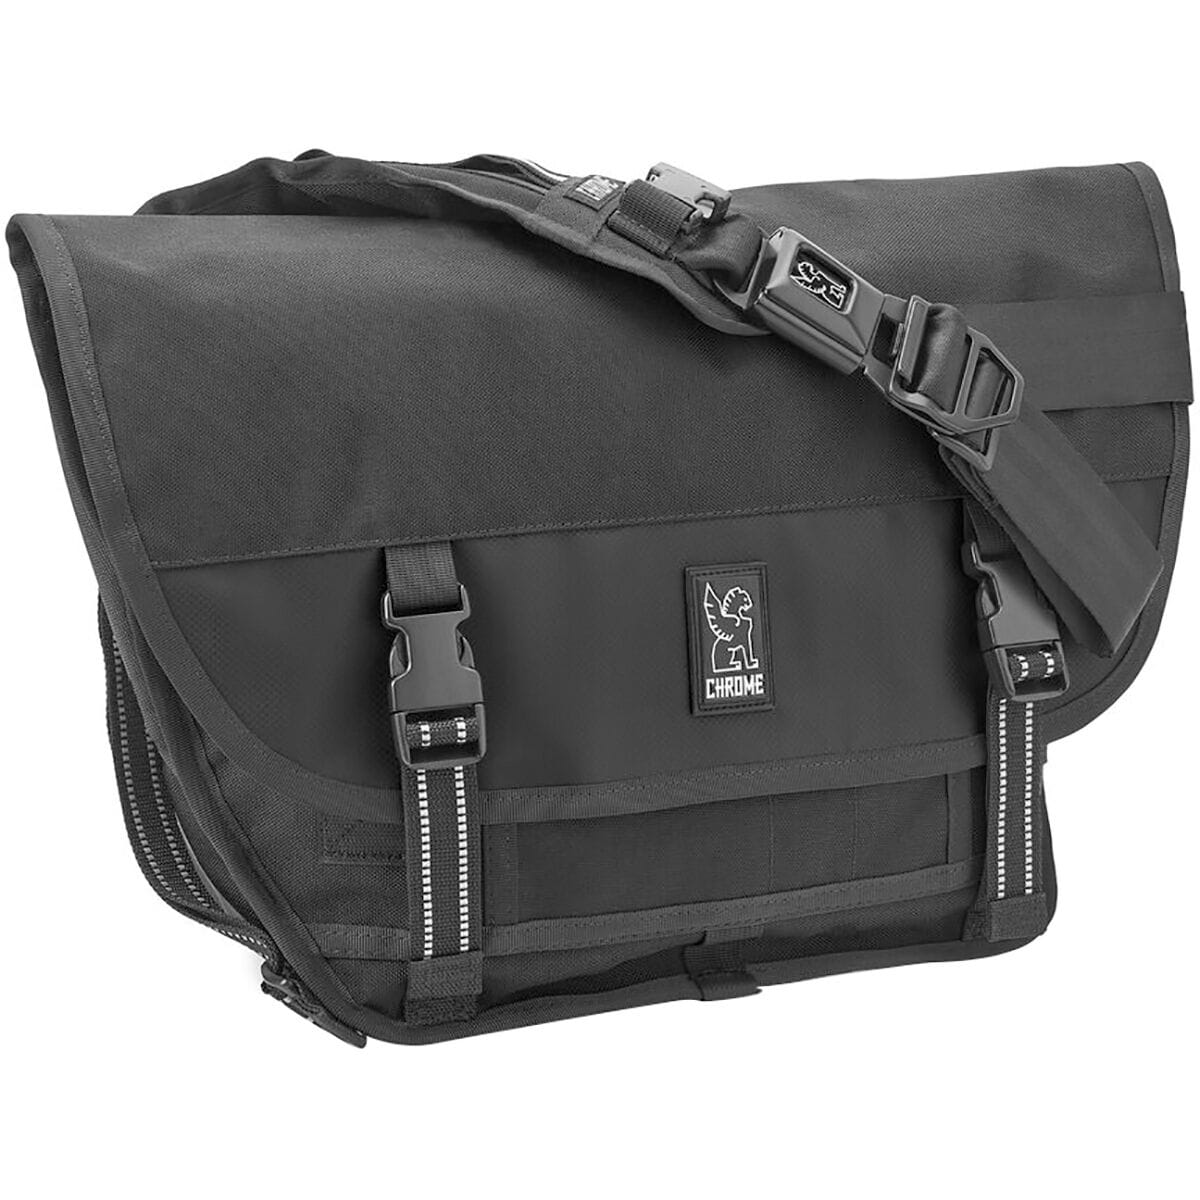 Chrome Mini Metro 20L Messenger Bag Black, One Size